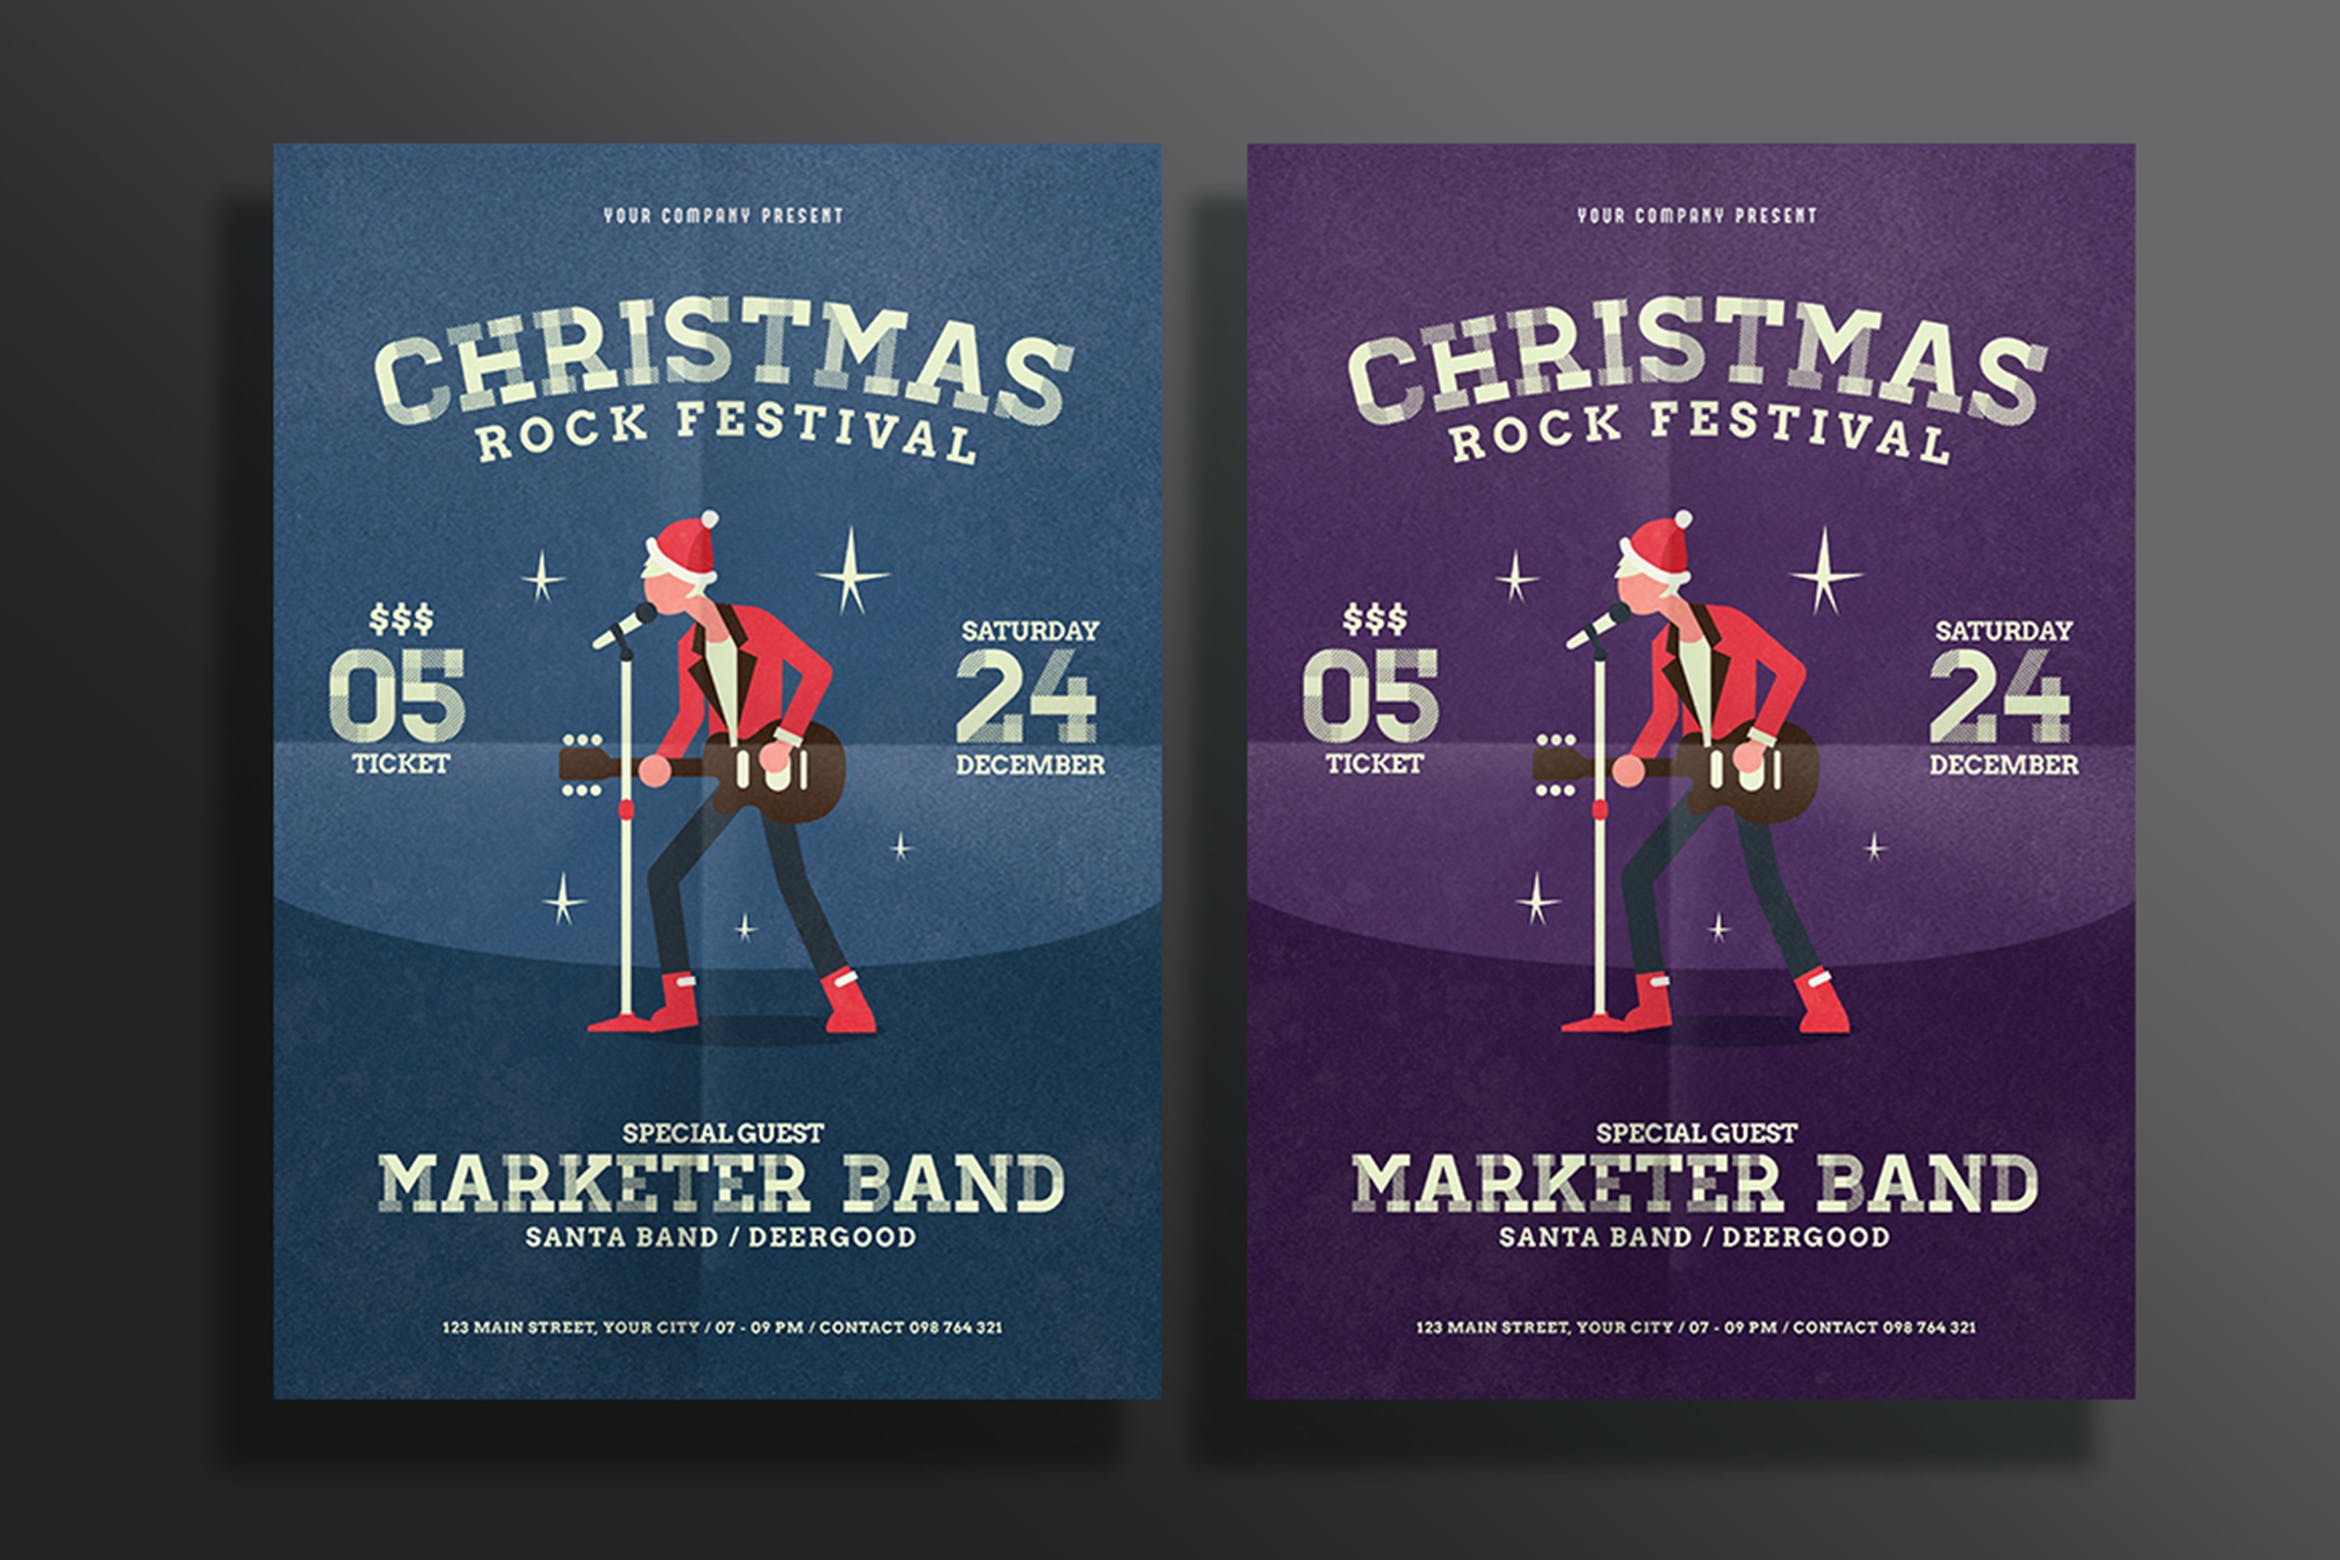 圣诞节摇滚音乐节海报传单设计模板 Christmas Rock Fest Flyer插图